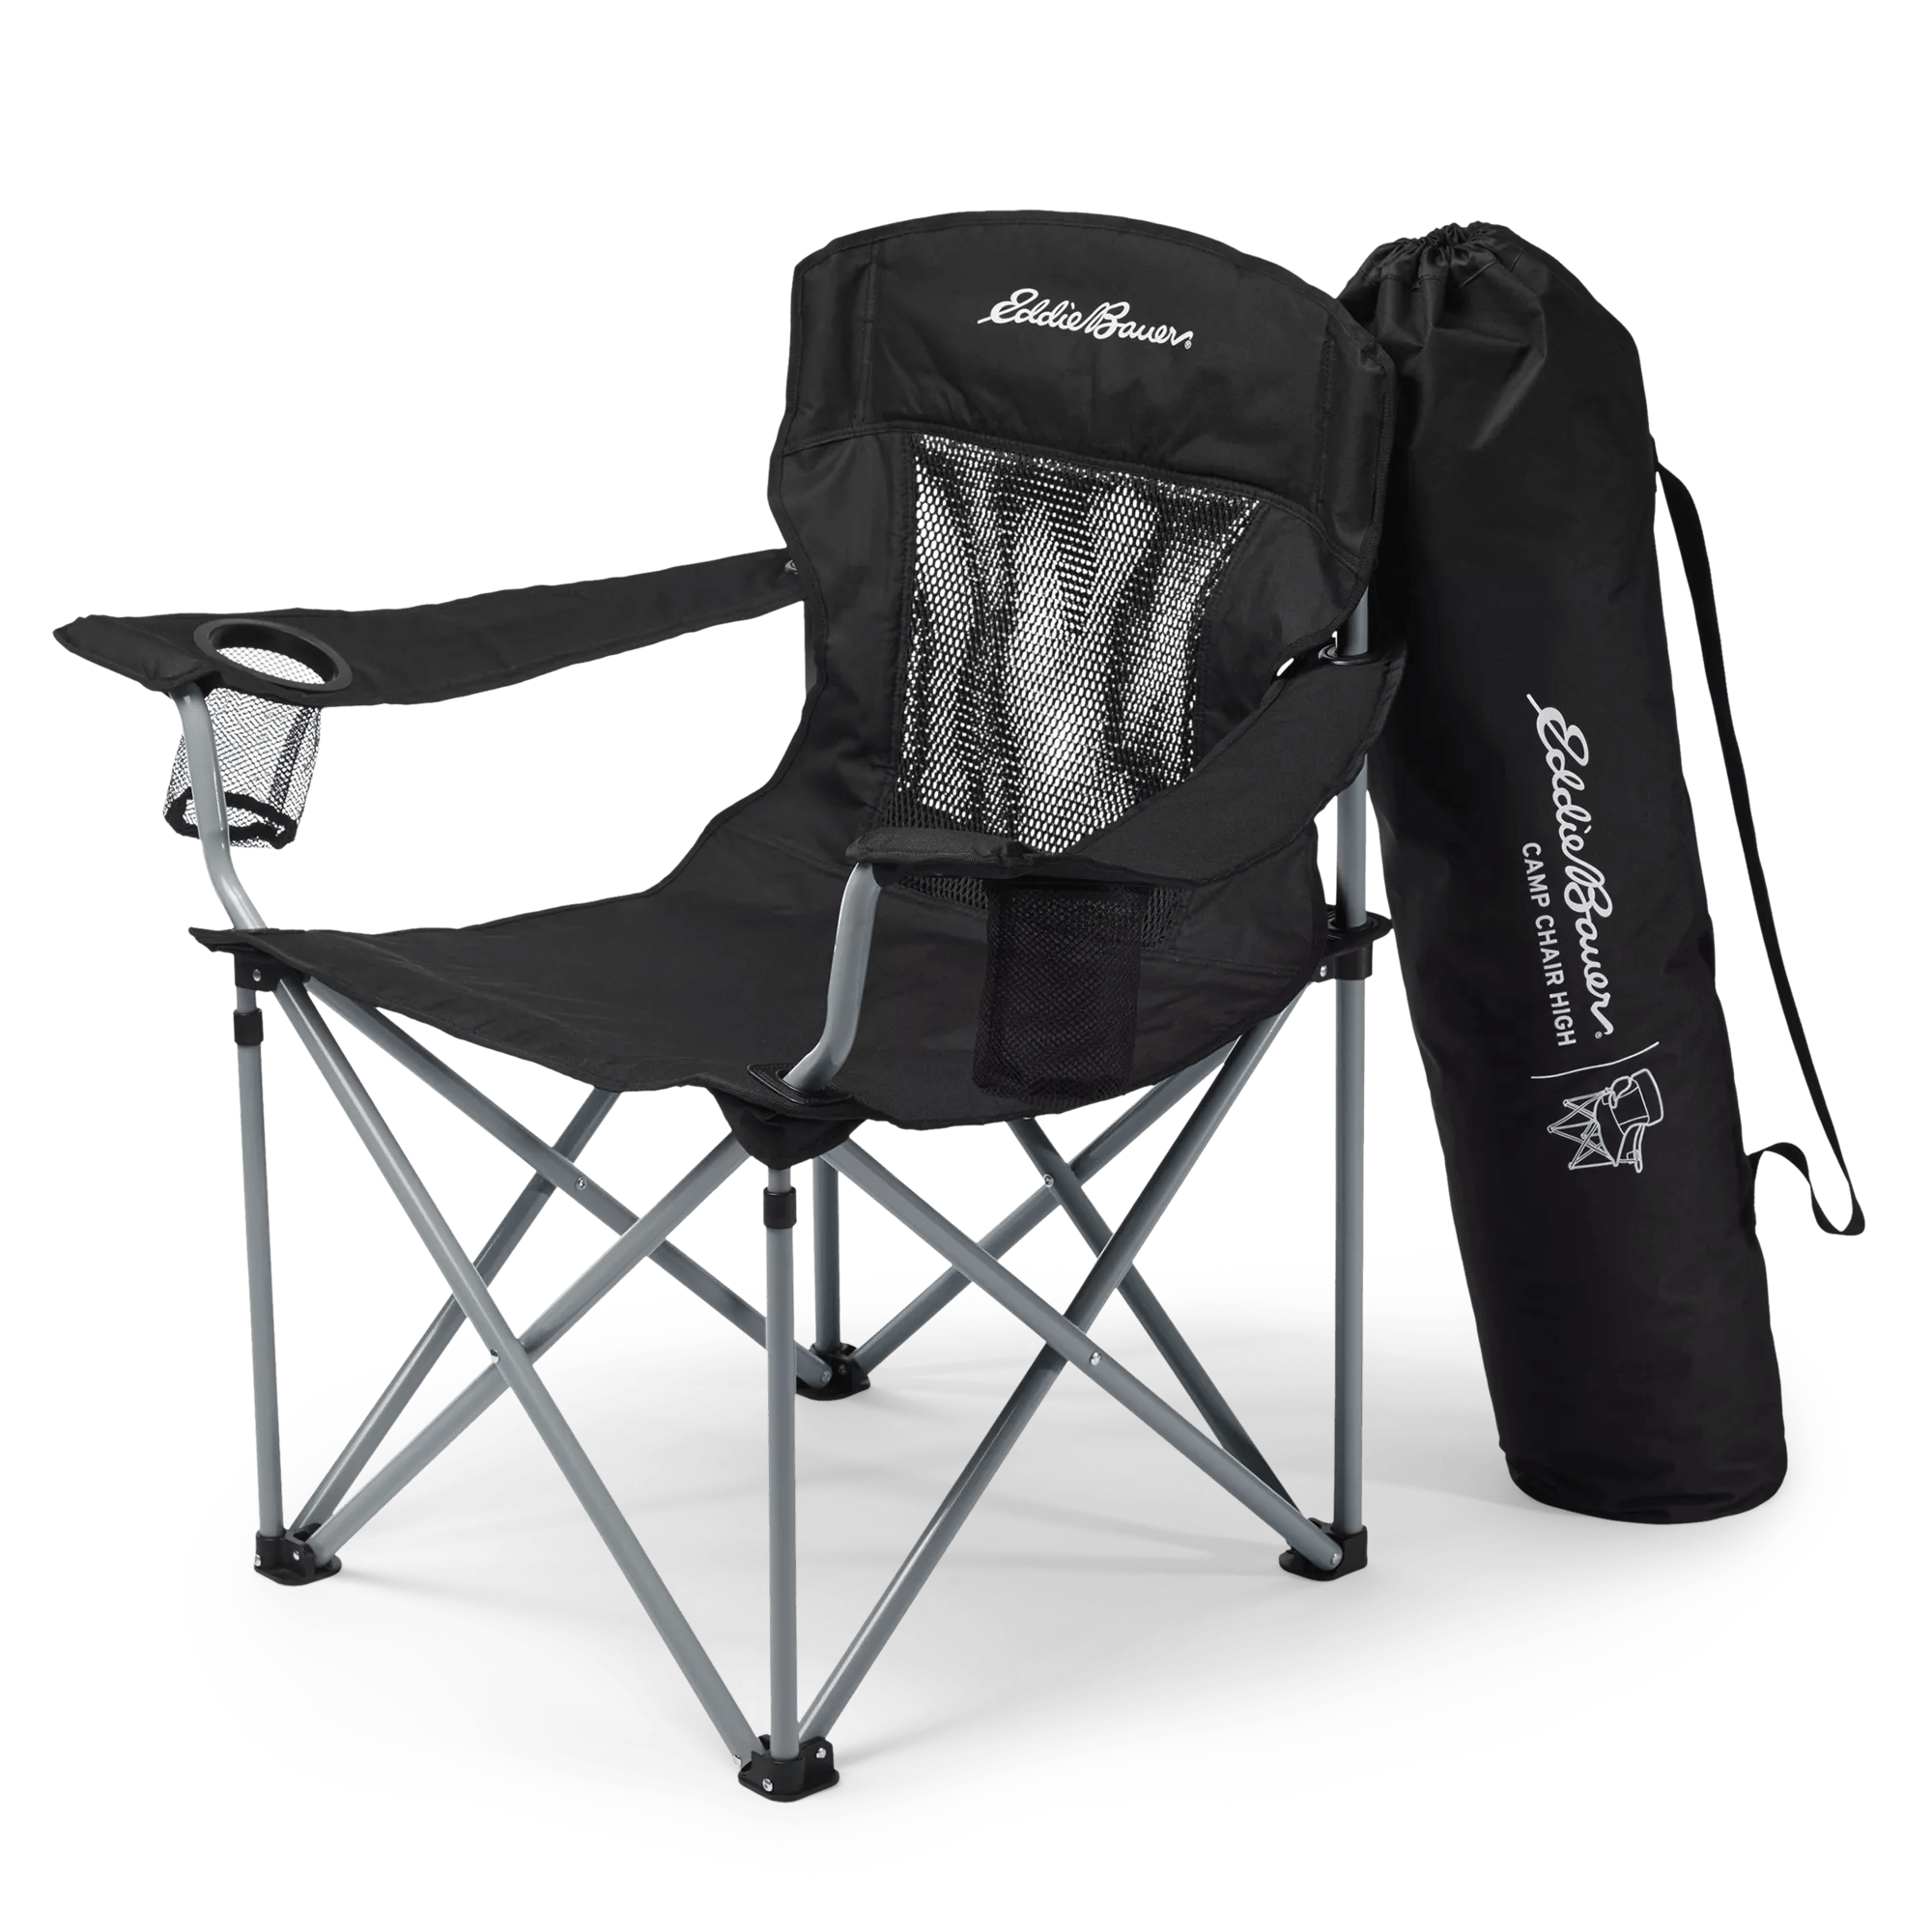 Camp Chair - High